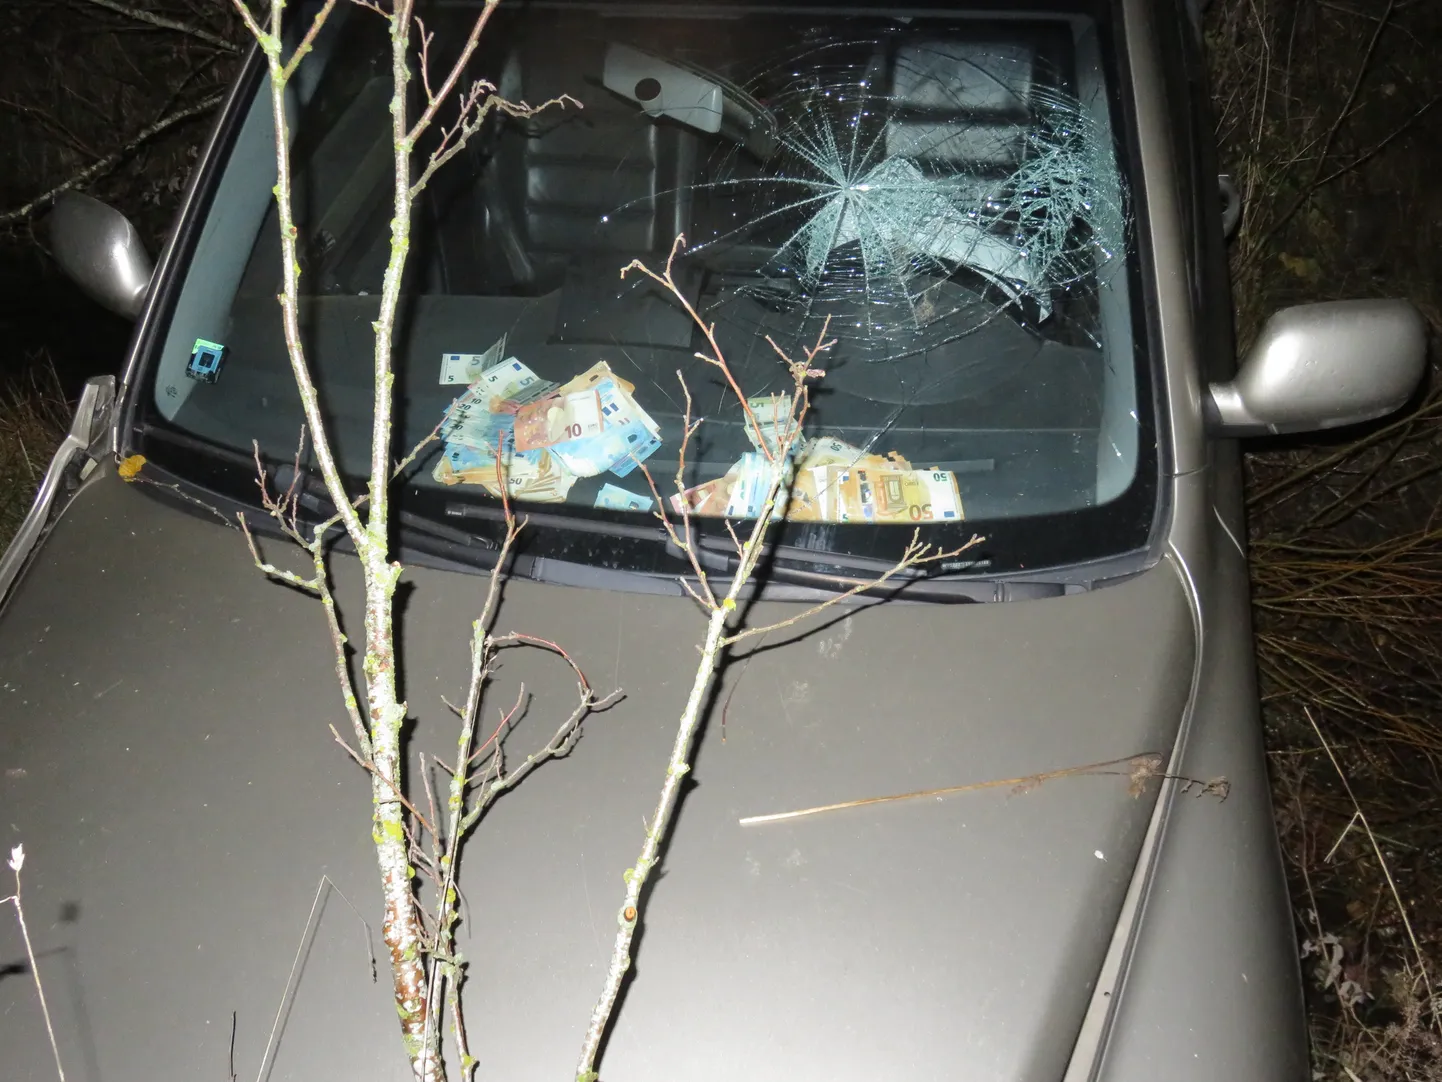 Съехавший в кювет автомобиль с латвийскими номерными знаками, на приборной панели осталось около 9000 евро.